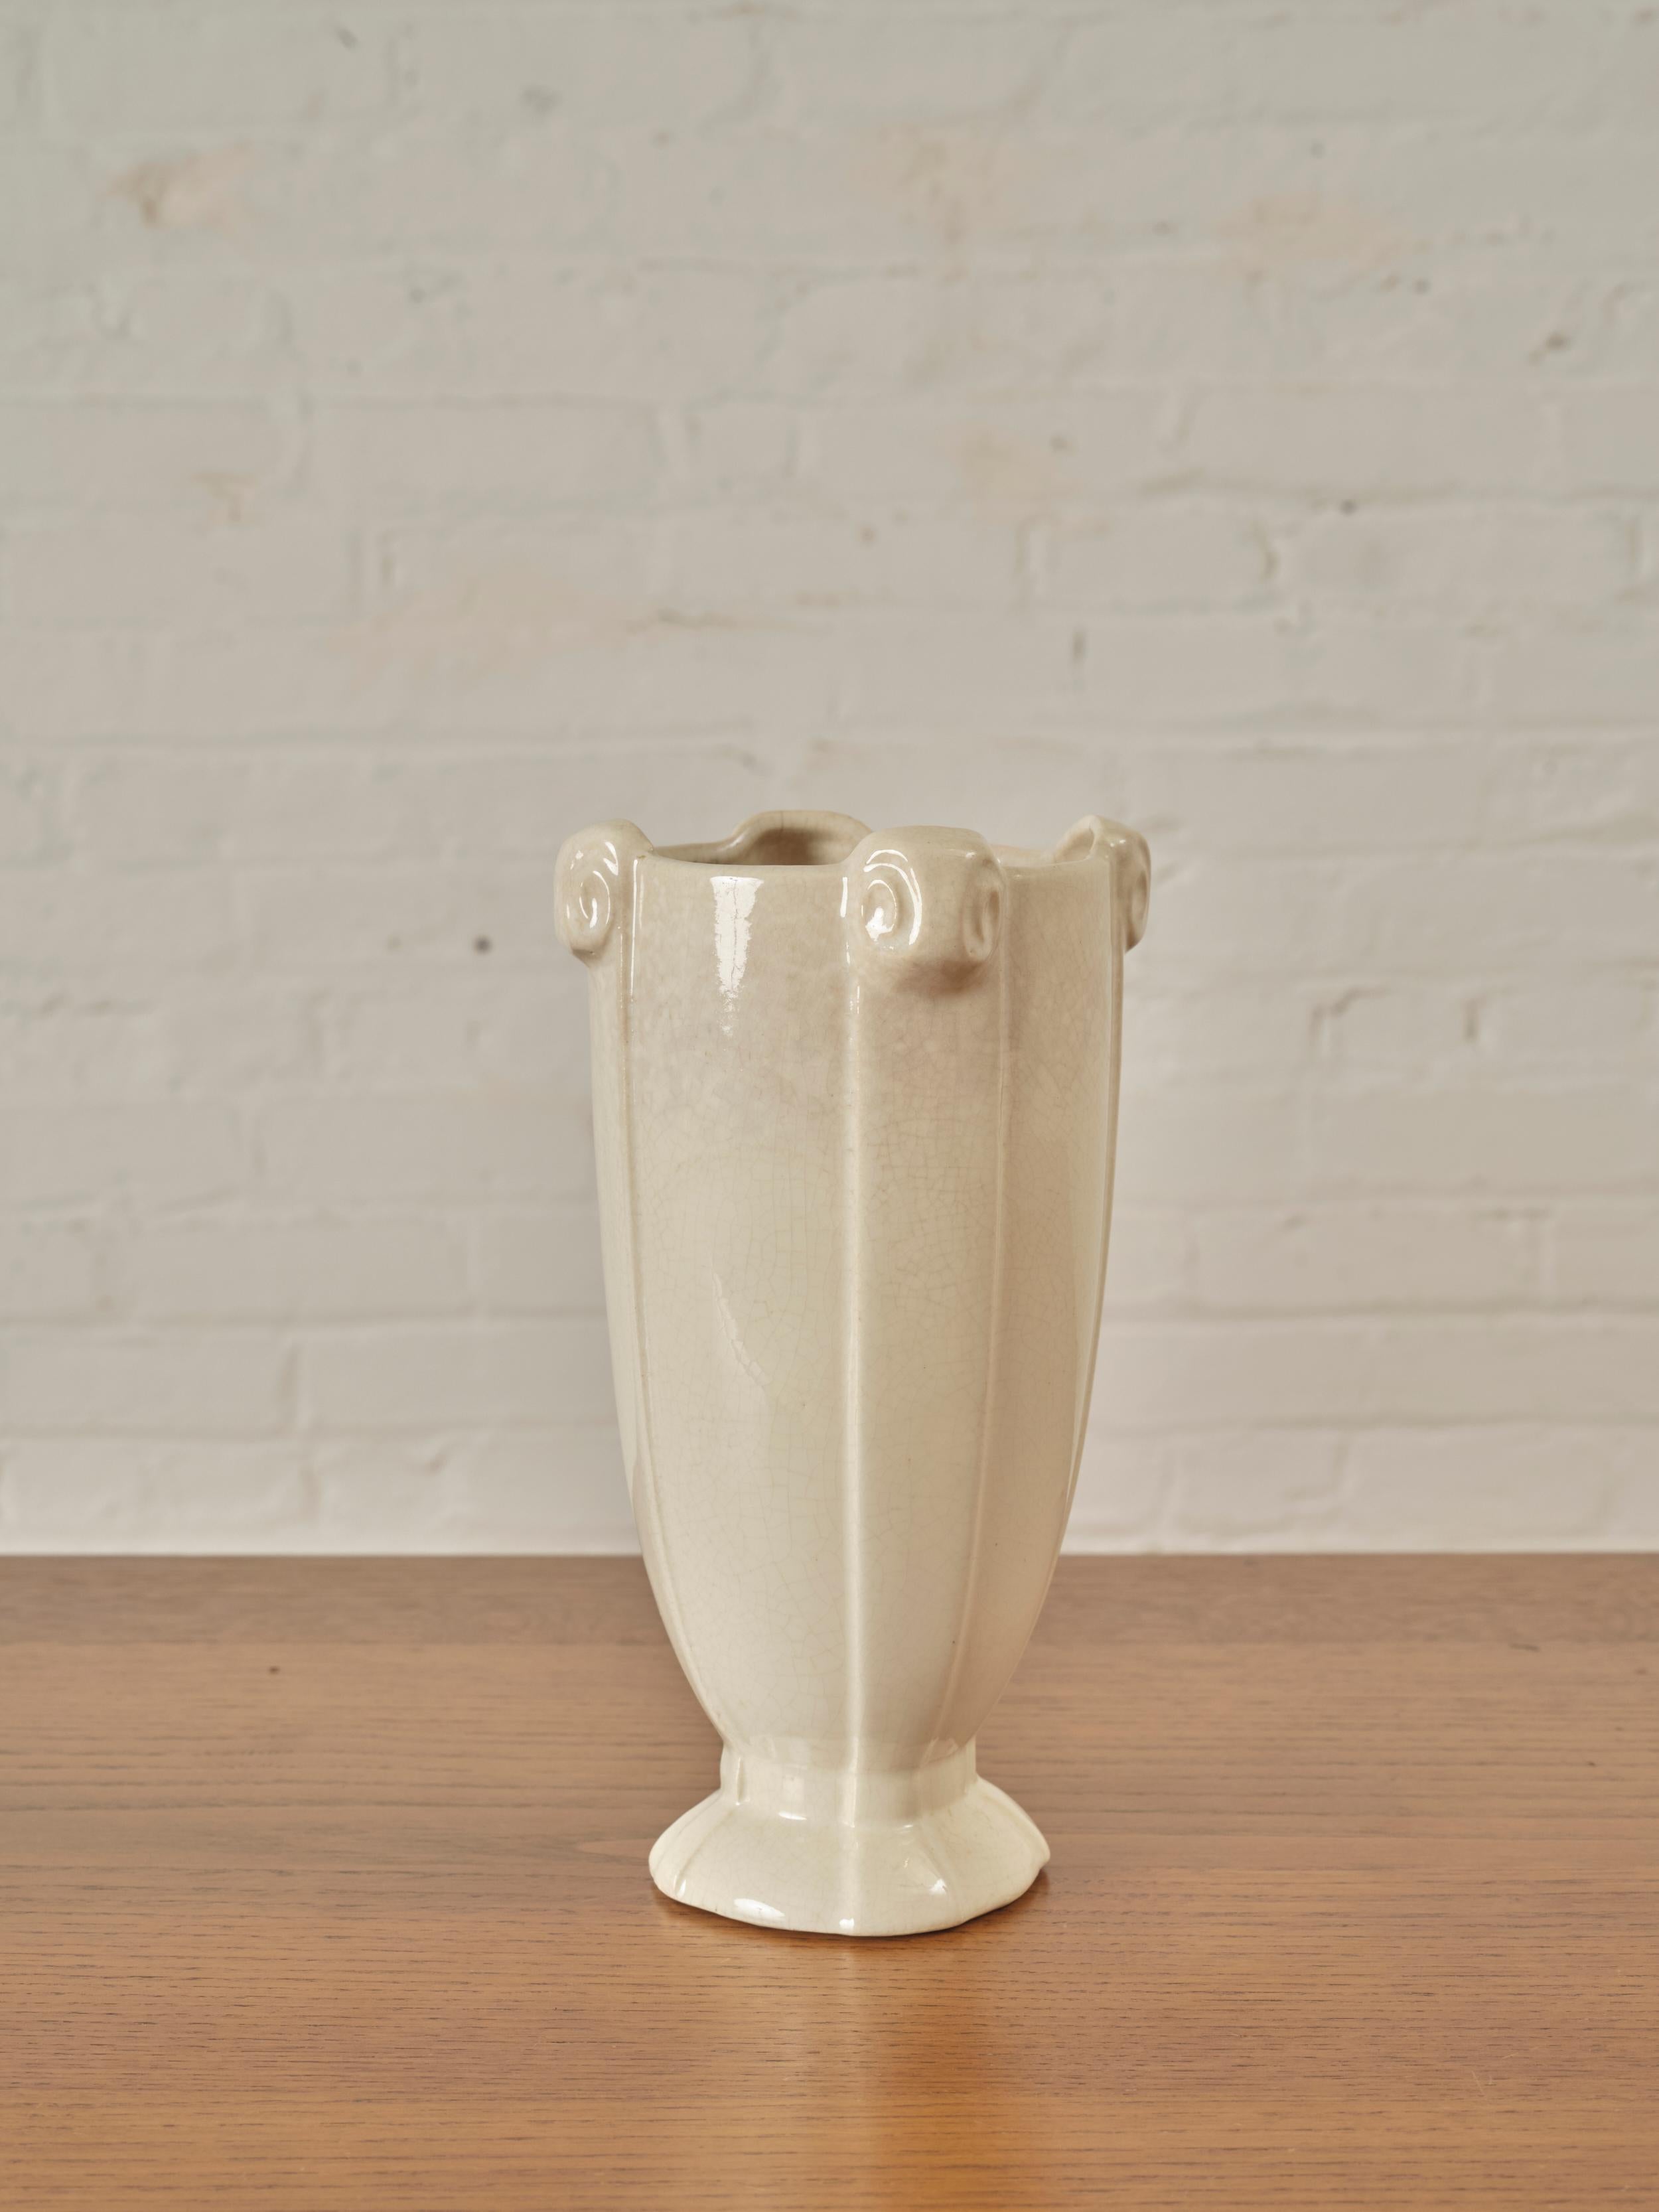 Vase émaillé par McCoy Pottery. Marques sur la face inférieure

